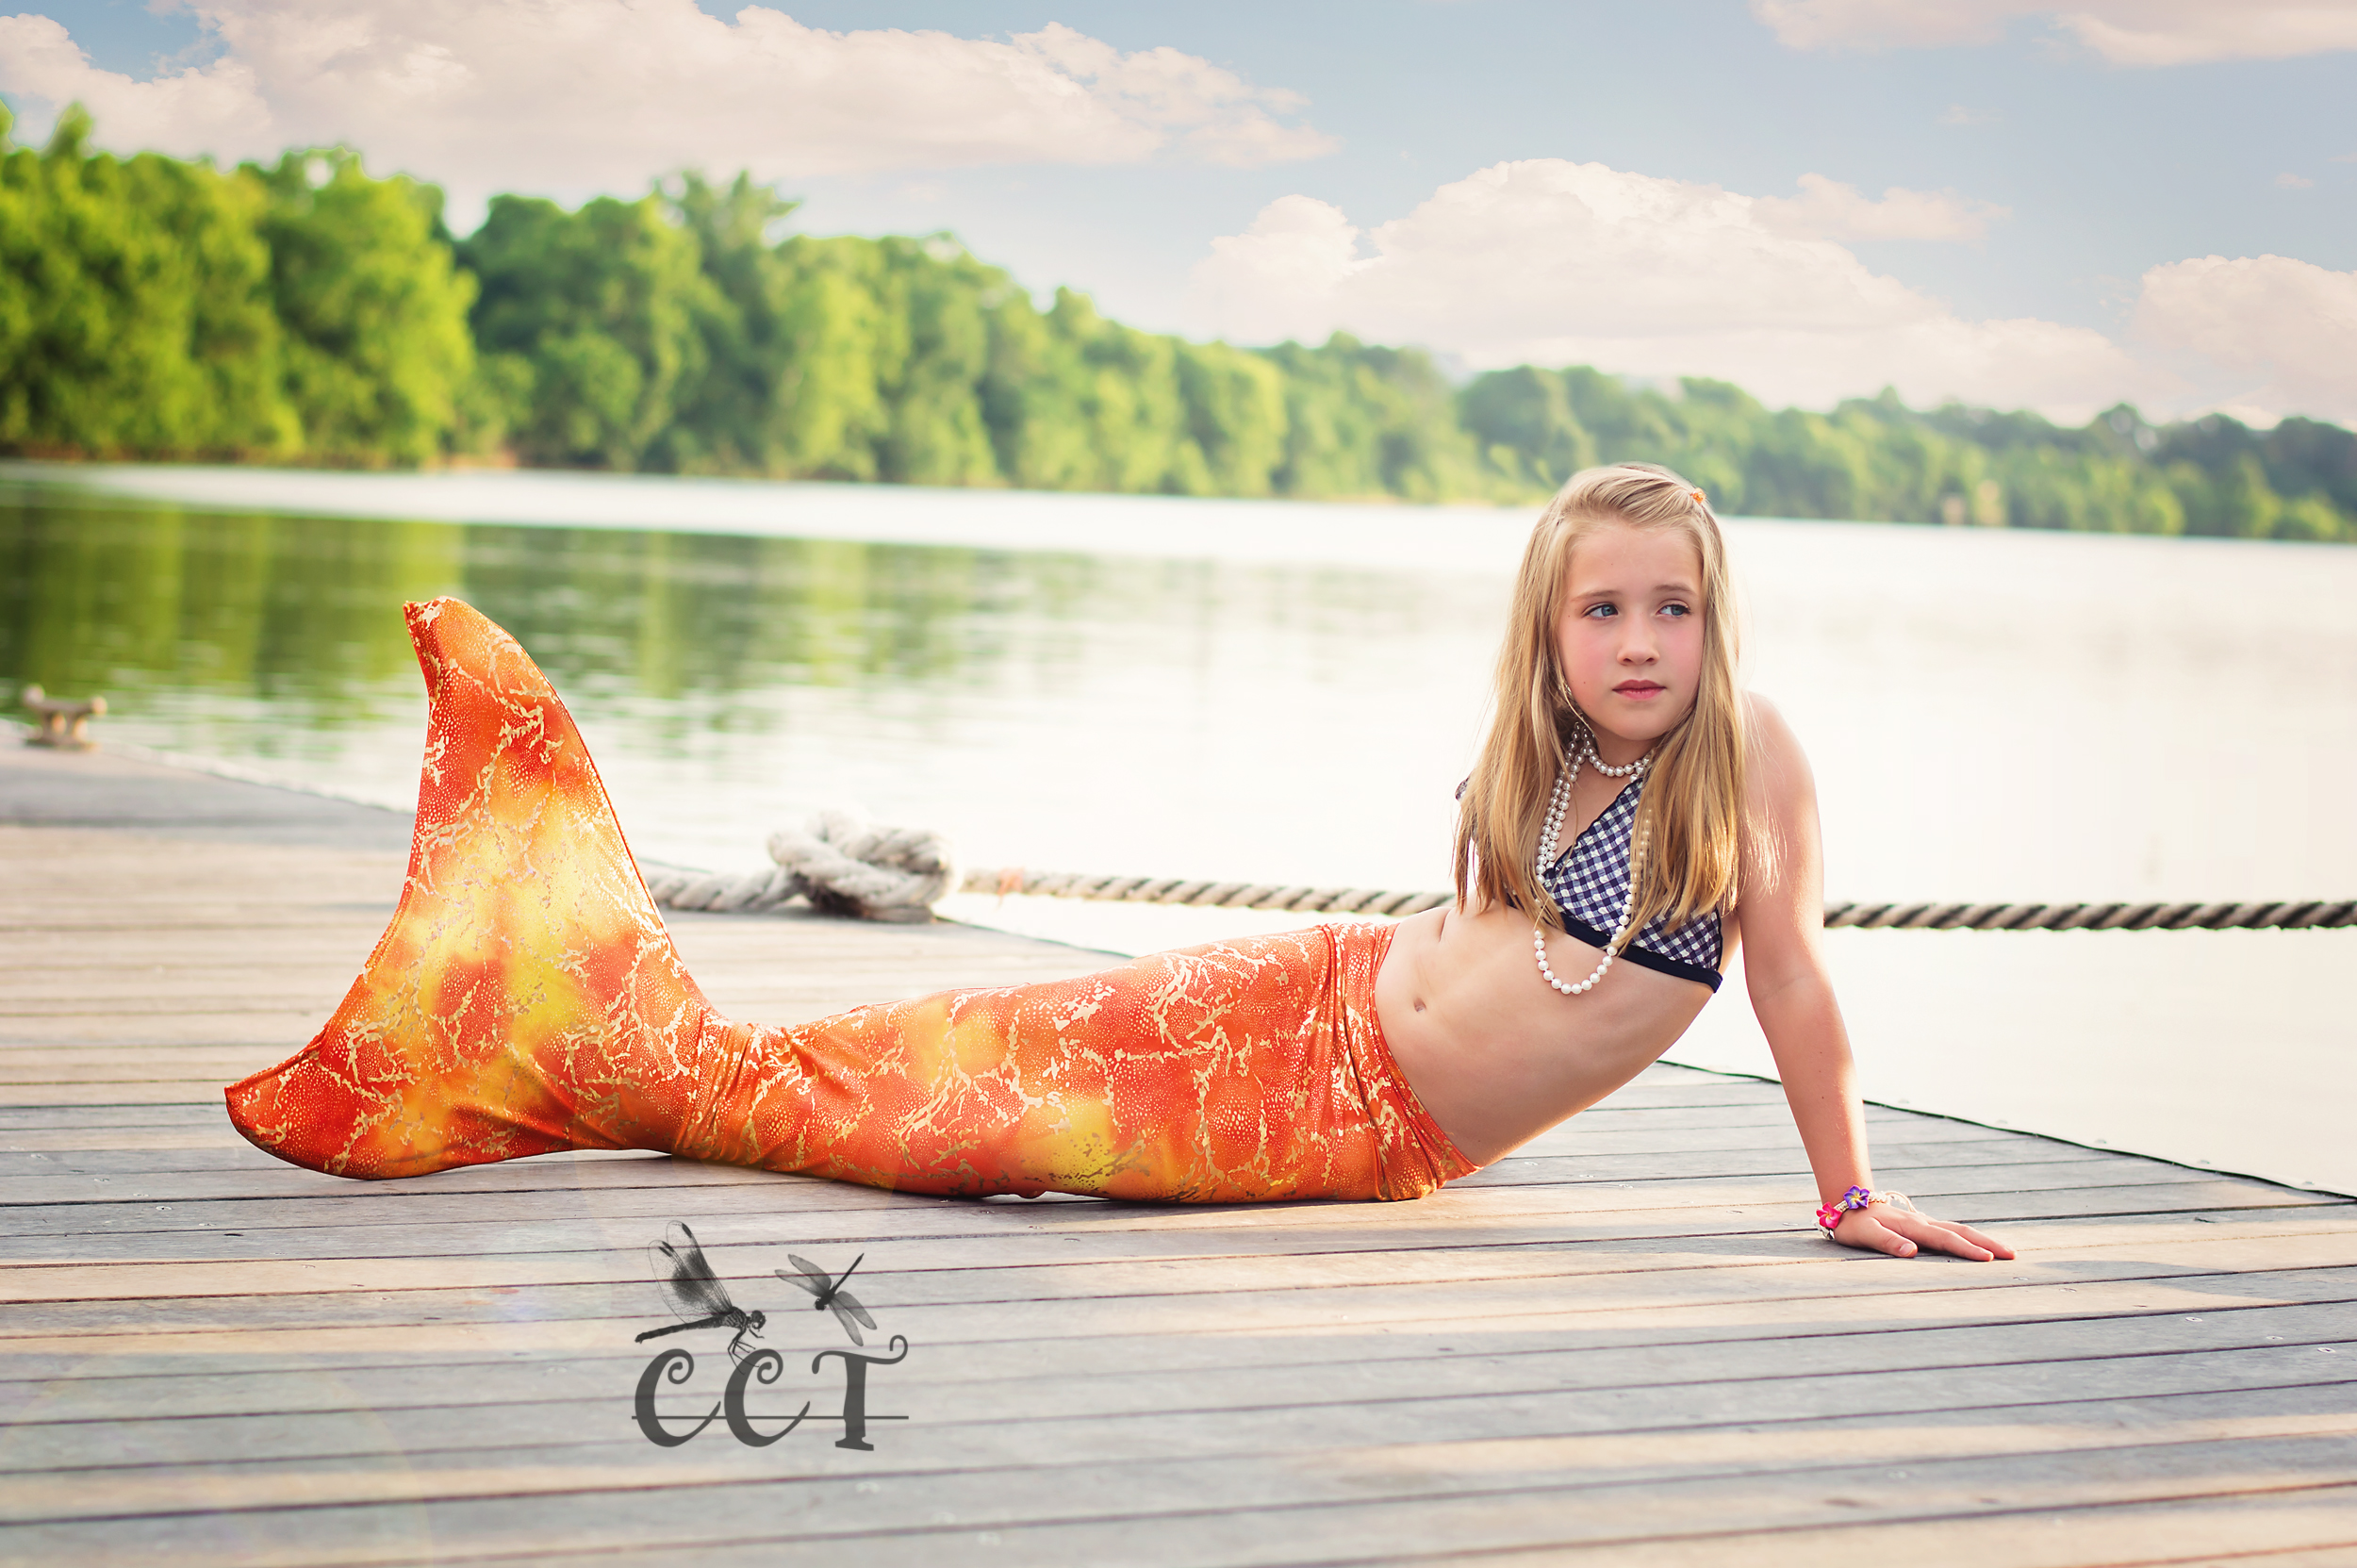 1wm Fun Summer Photo Shoot: The Mermaid Editar planos Accións de Photoshop Consellos de Photoshop